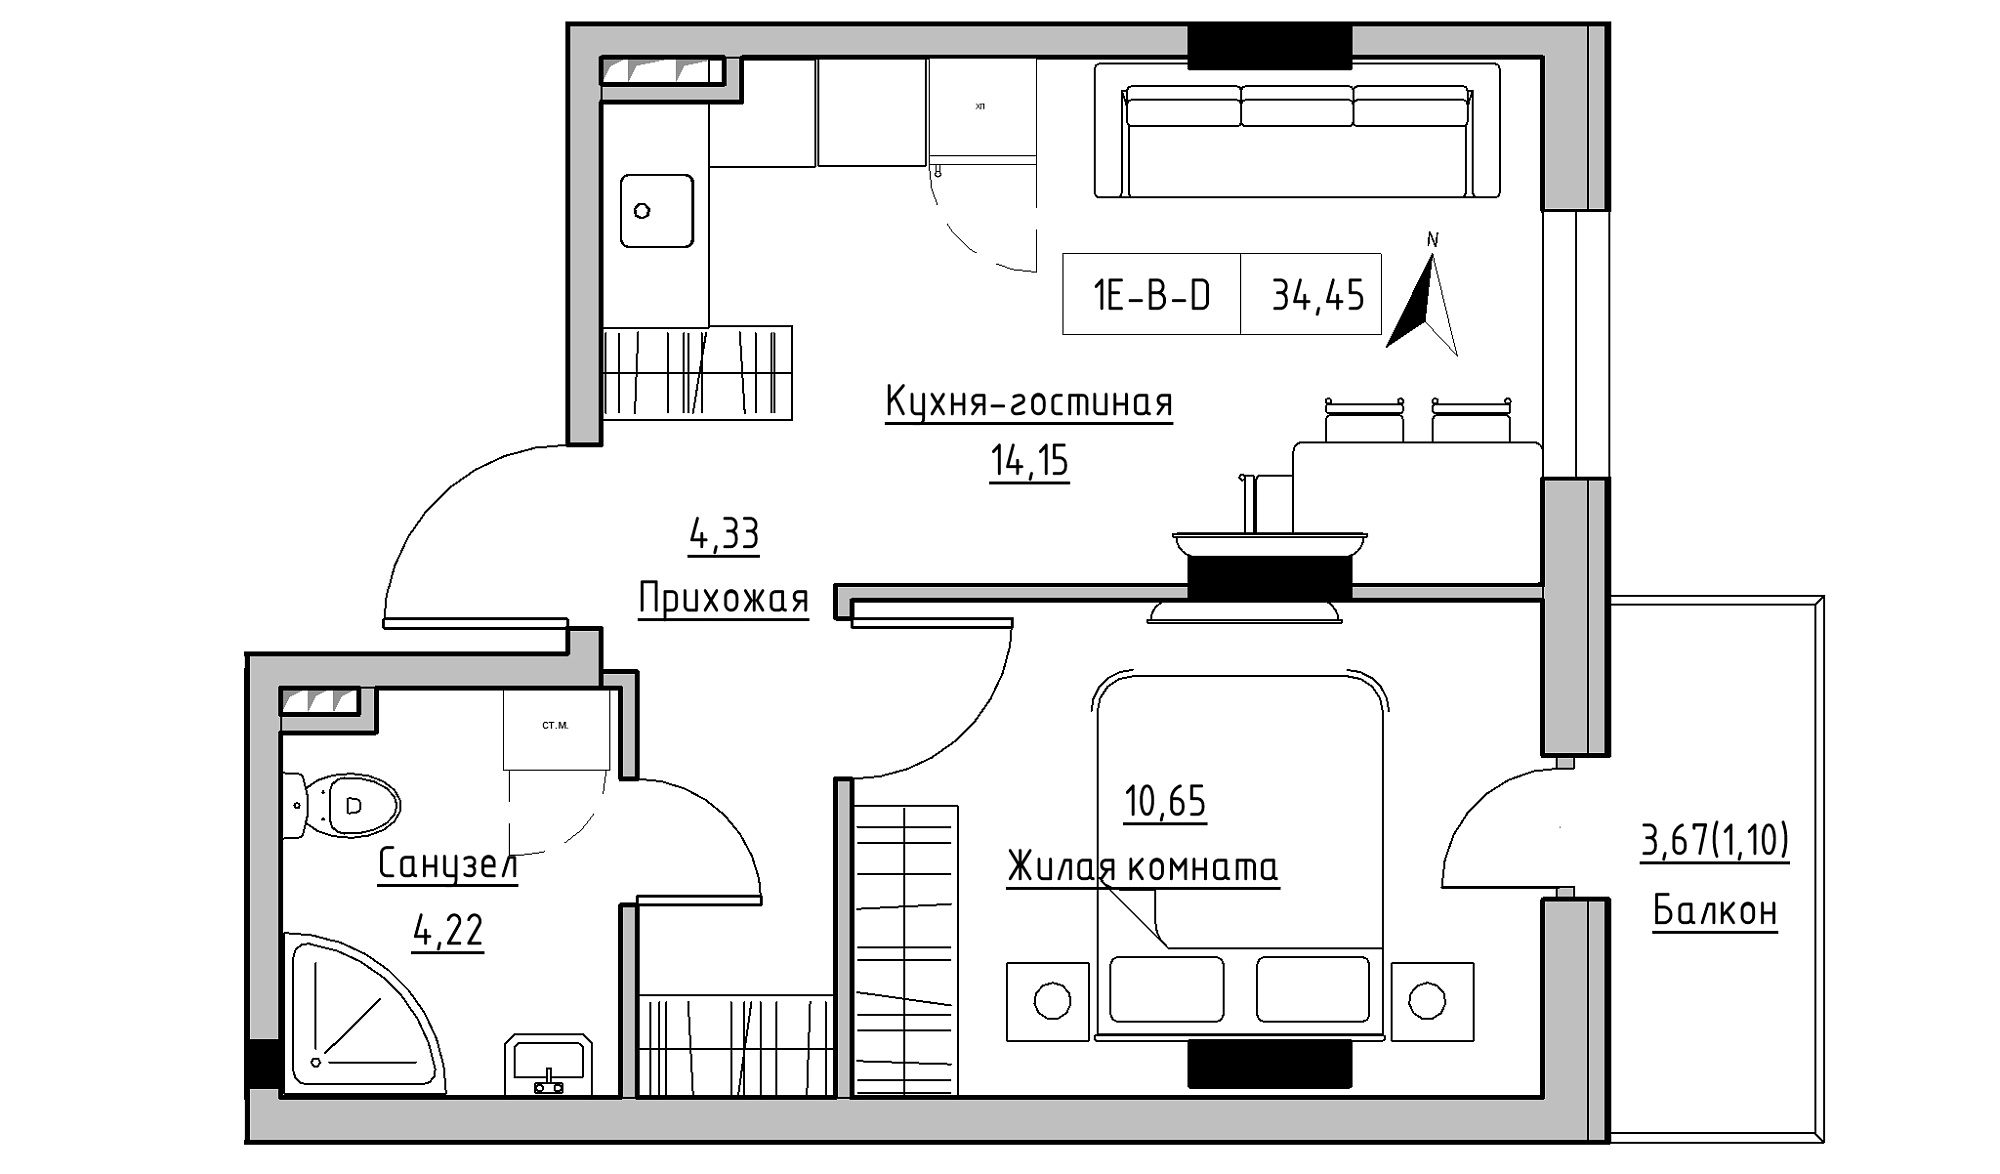 Планування 1-к квартира площею 34.45м2, KS-025-02/0002.